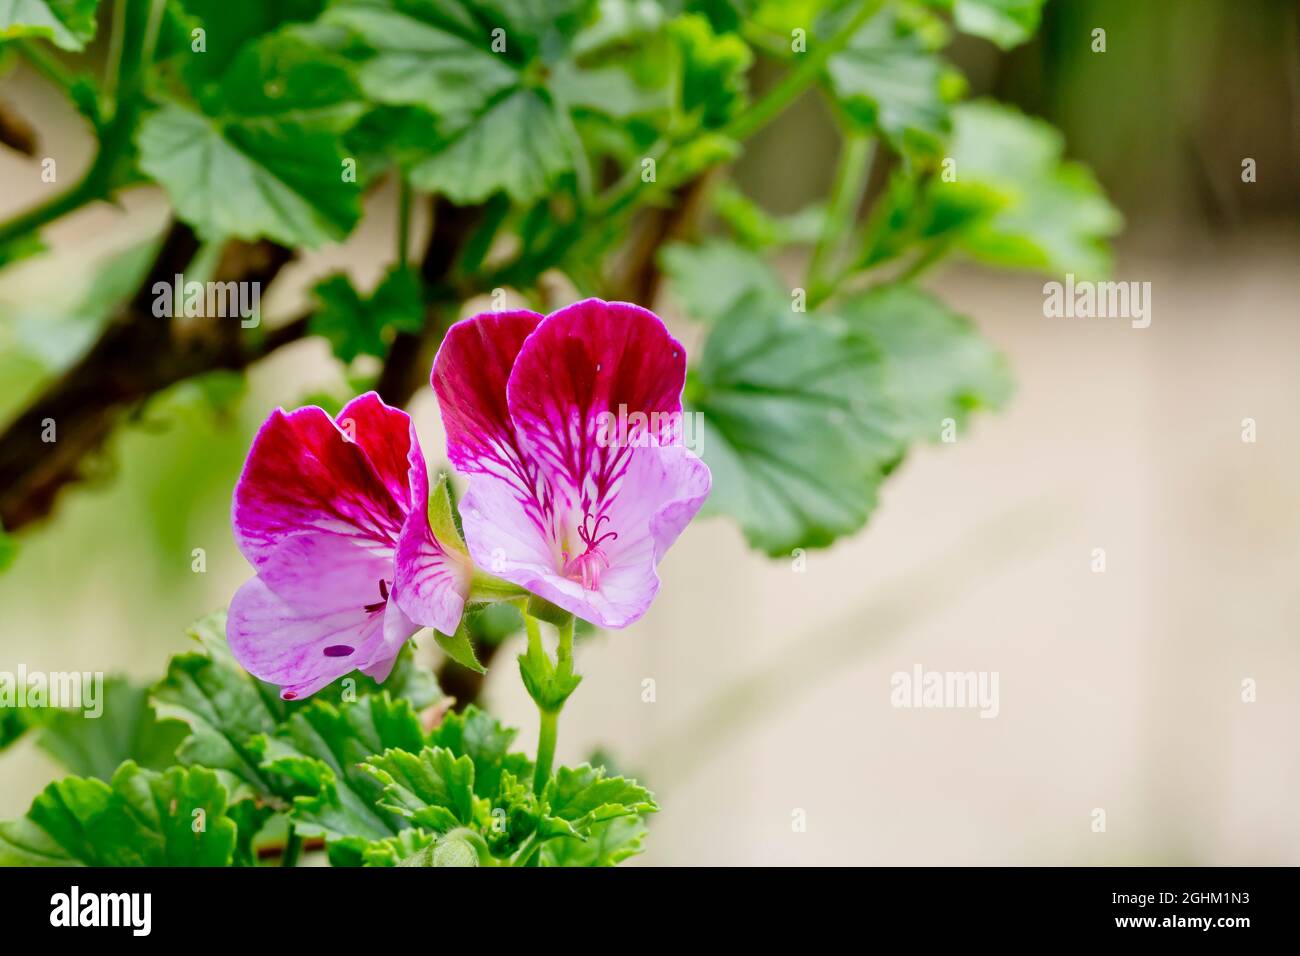 Pelargonium 'Tip Top Duet' in bloom in a garden Stock Photo